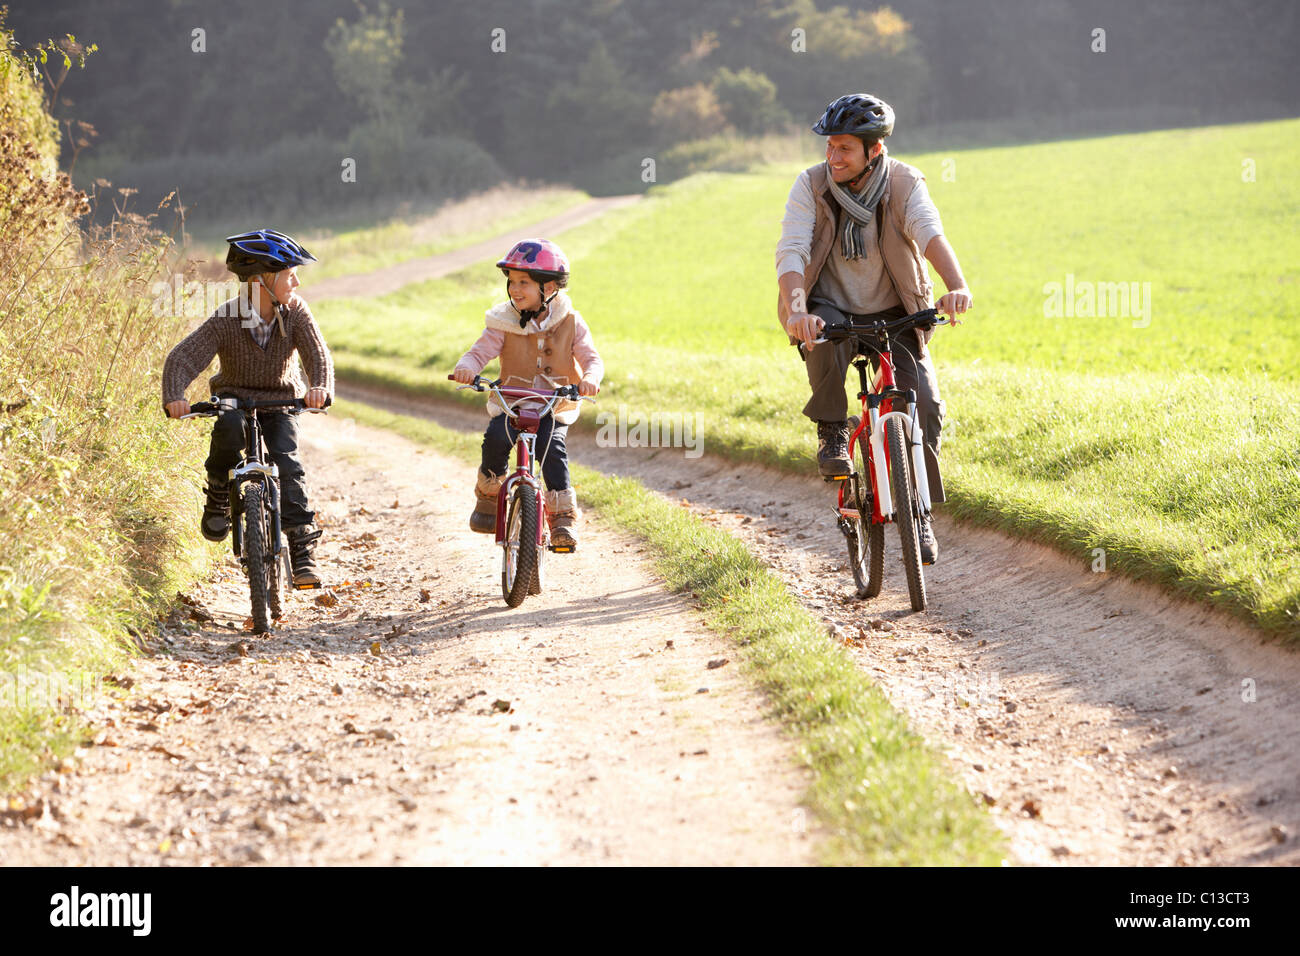 The children are riding bikes. Семья на велосипедах. Папа с ребенком на велосипеде. Отец и дети ехали на велосипедах. Папа с детьми балуется на велосипедах.